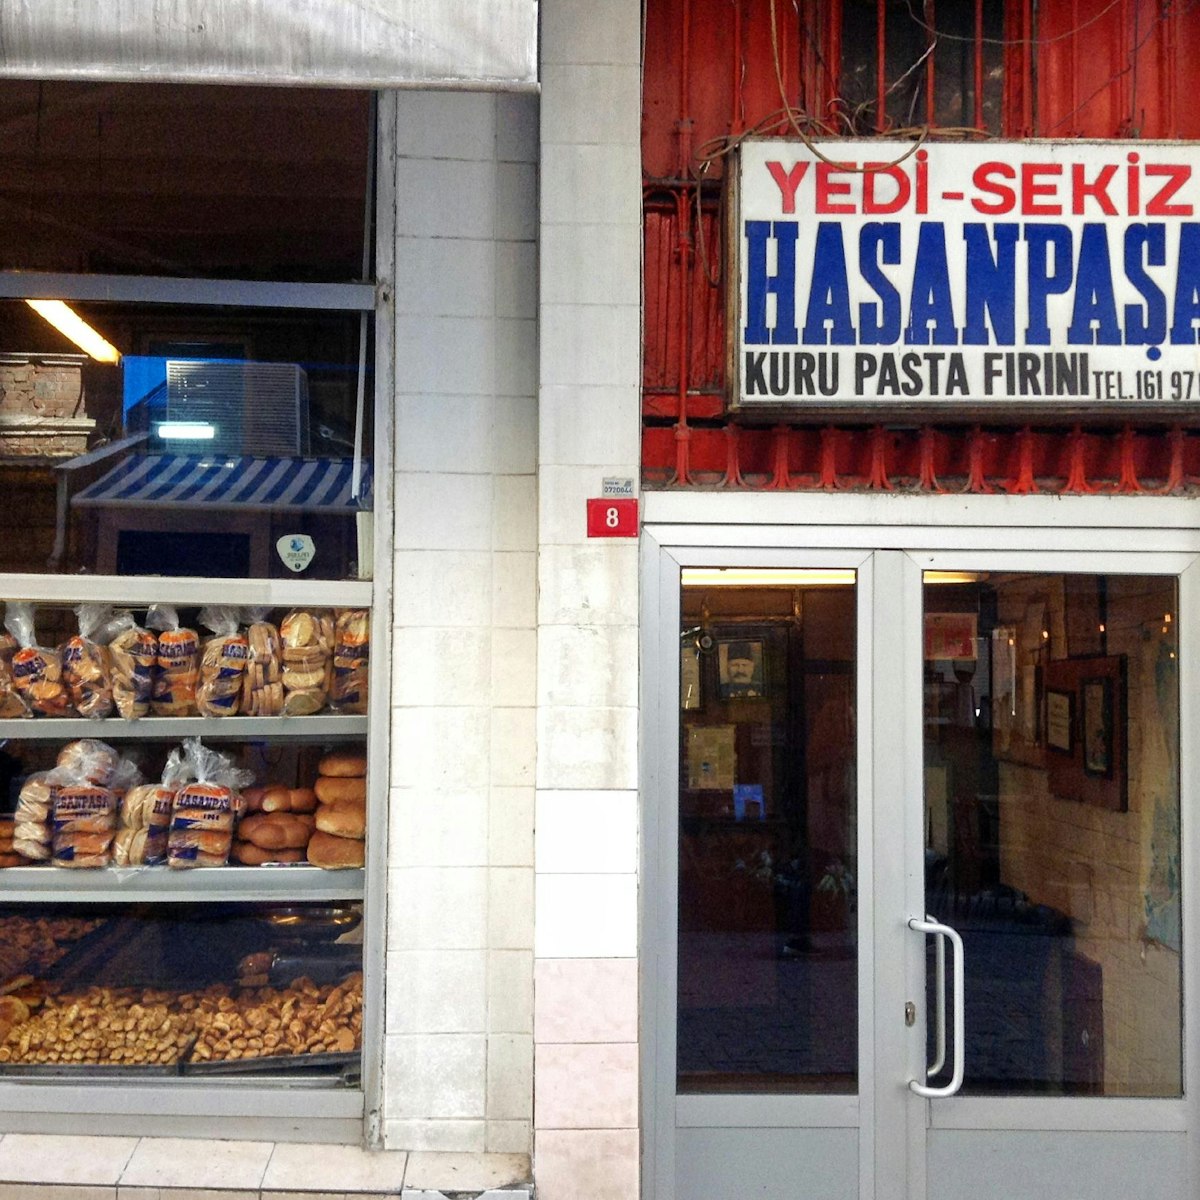 The 7-8 Hasanpaşa Fırını bakery in central Beşiktaş